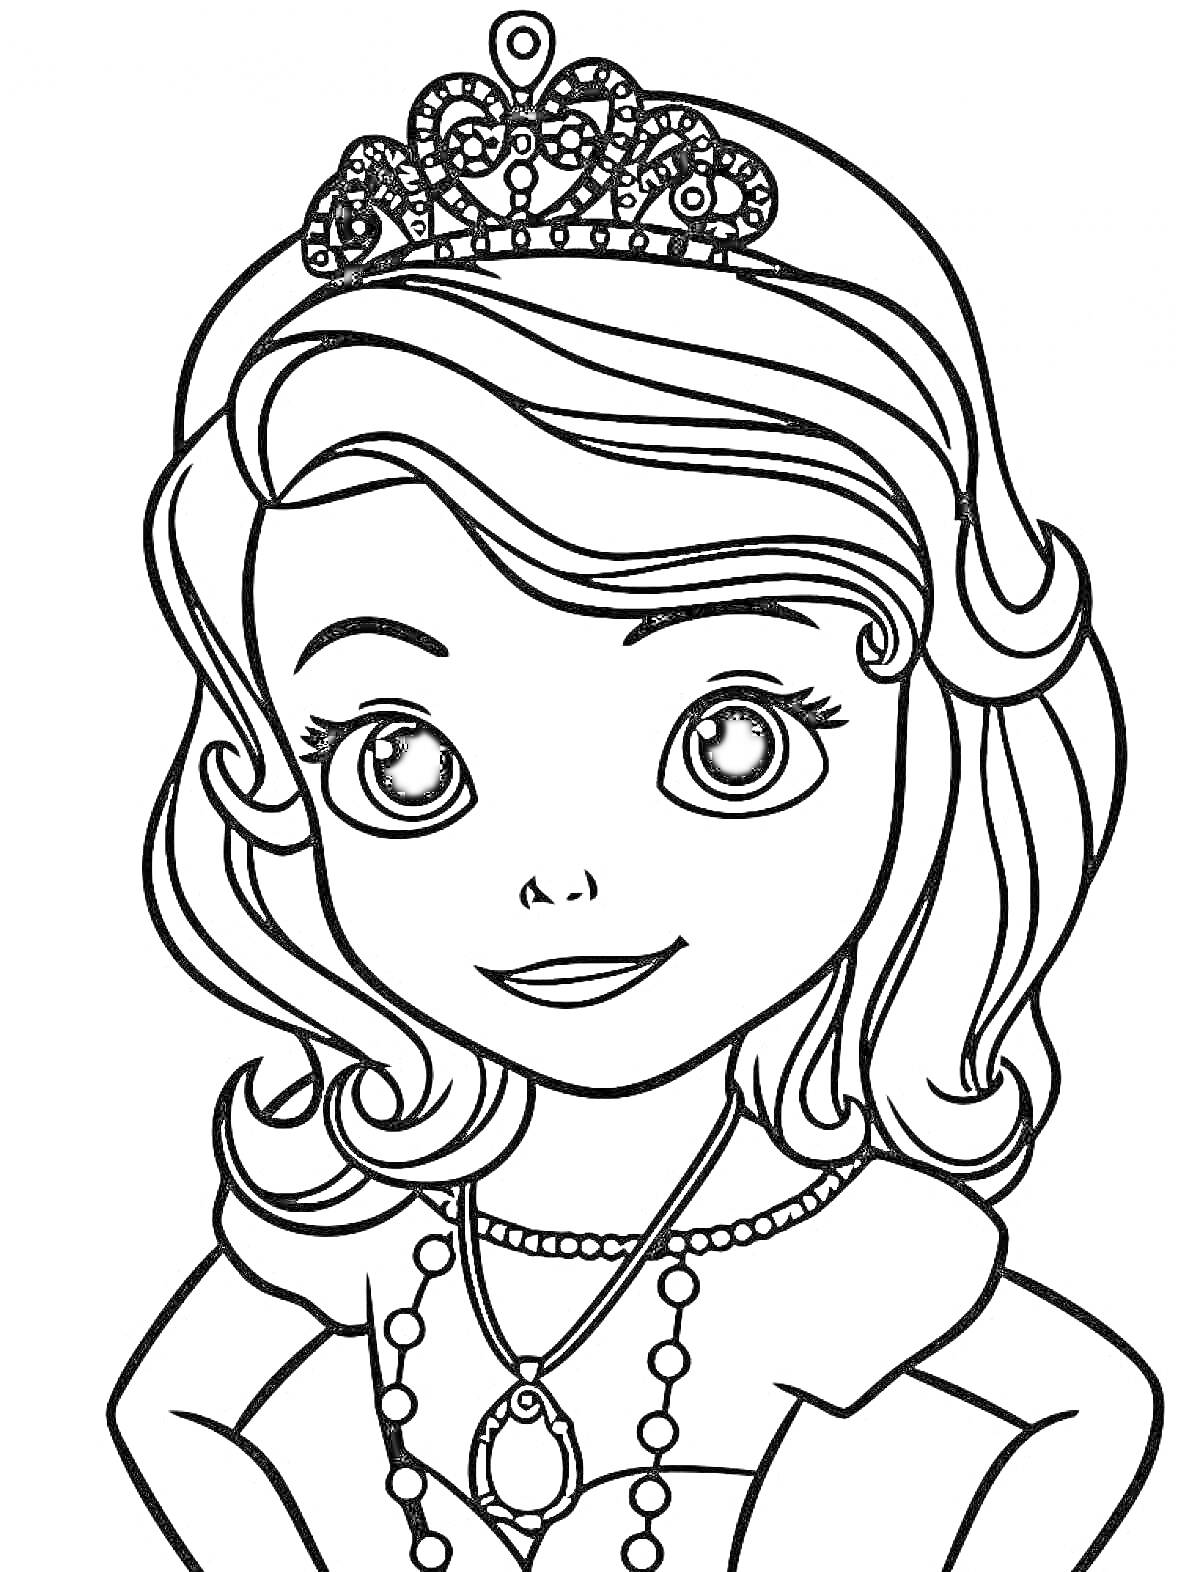 Раскраска Принцесса София в короне с ожерельем